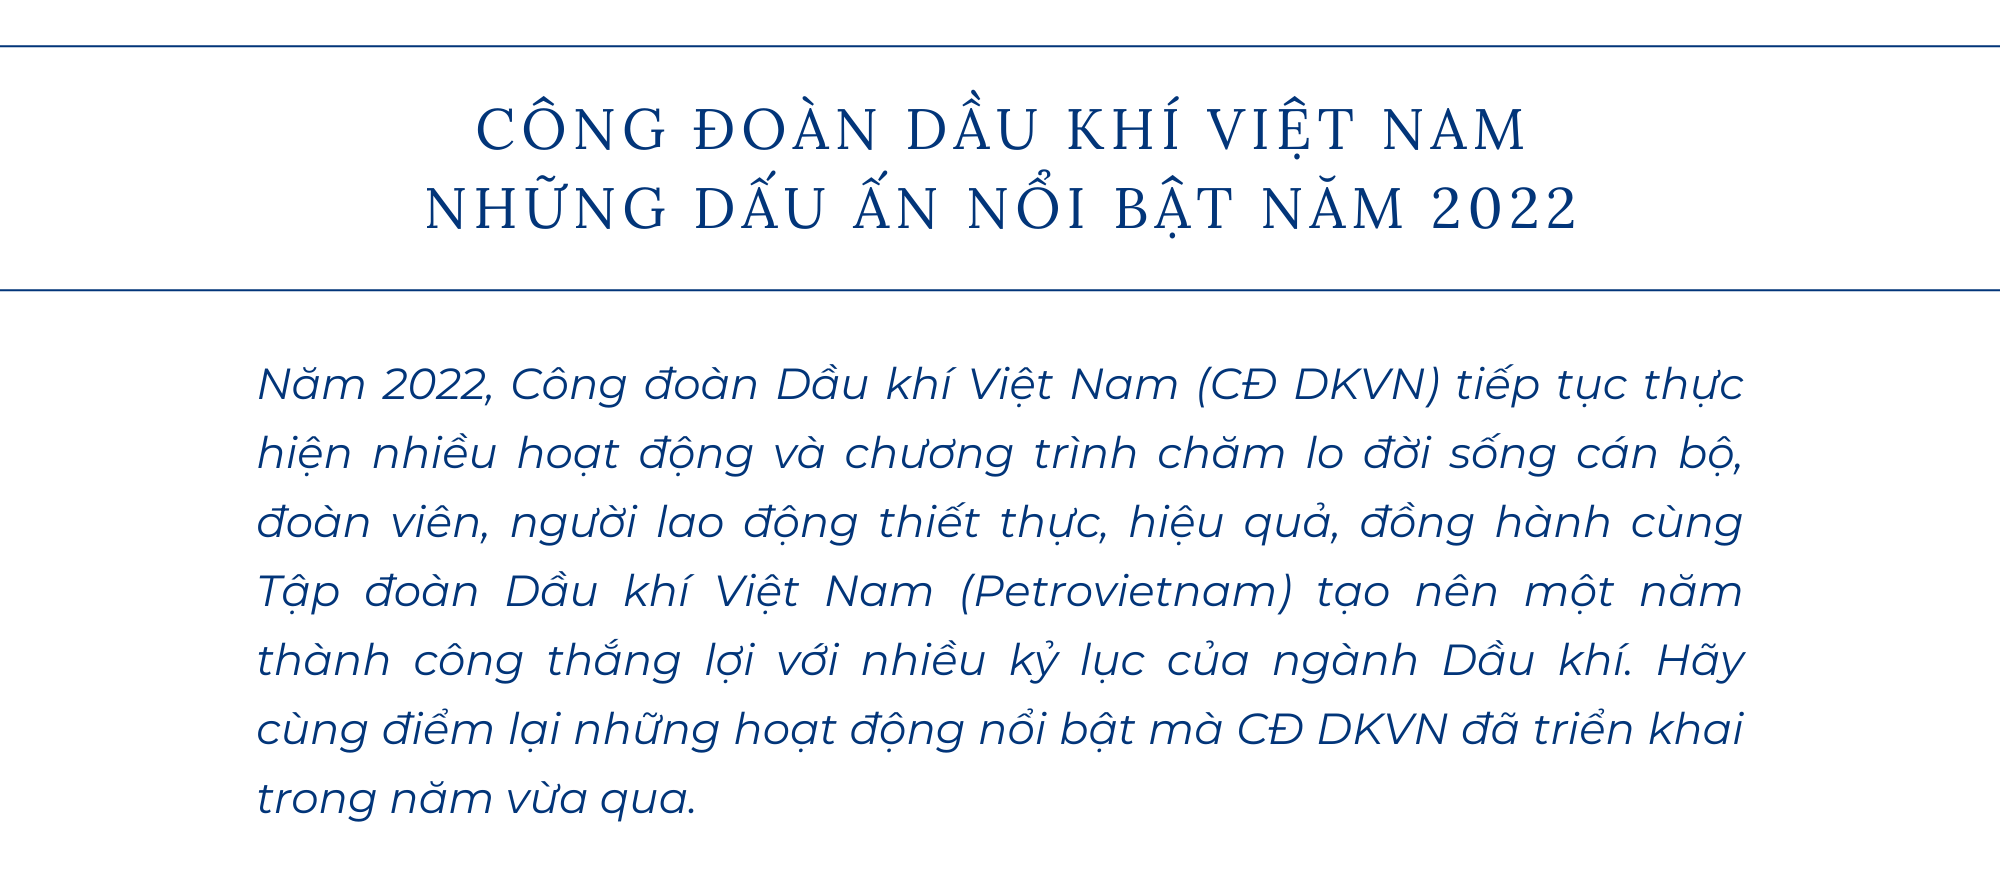 [E-Magazine] Công đoàn Dầu khí Việt Nam: Những dấu ấn nổi bật năm 2022